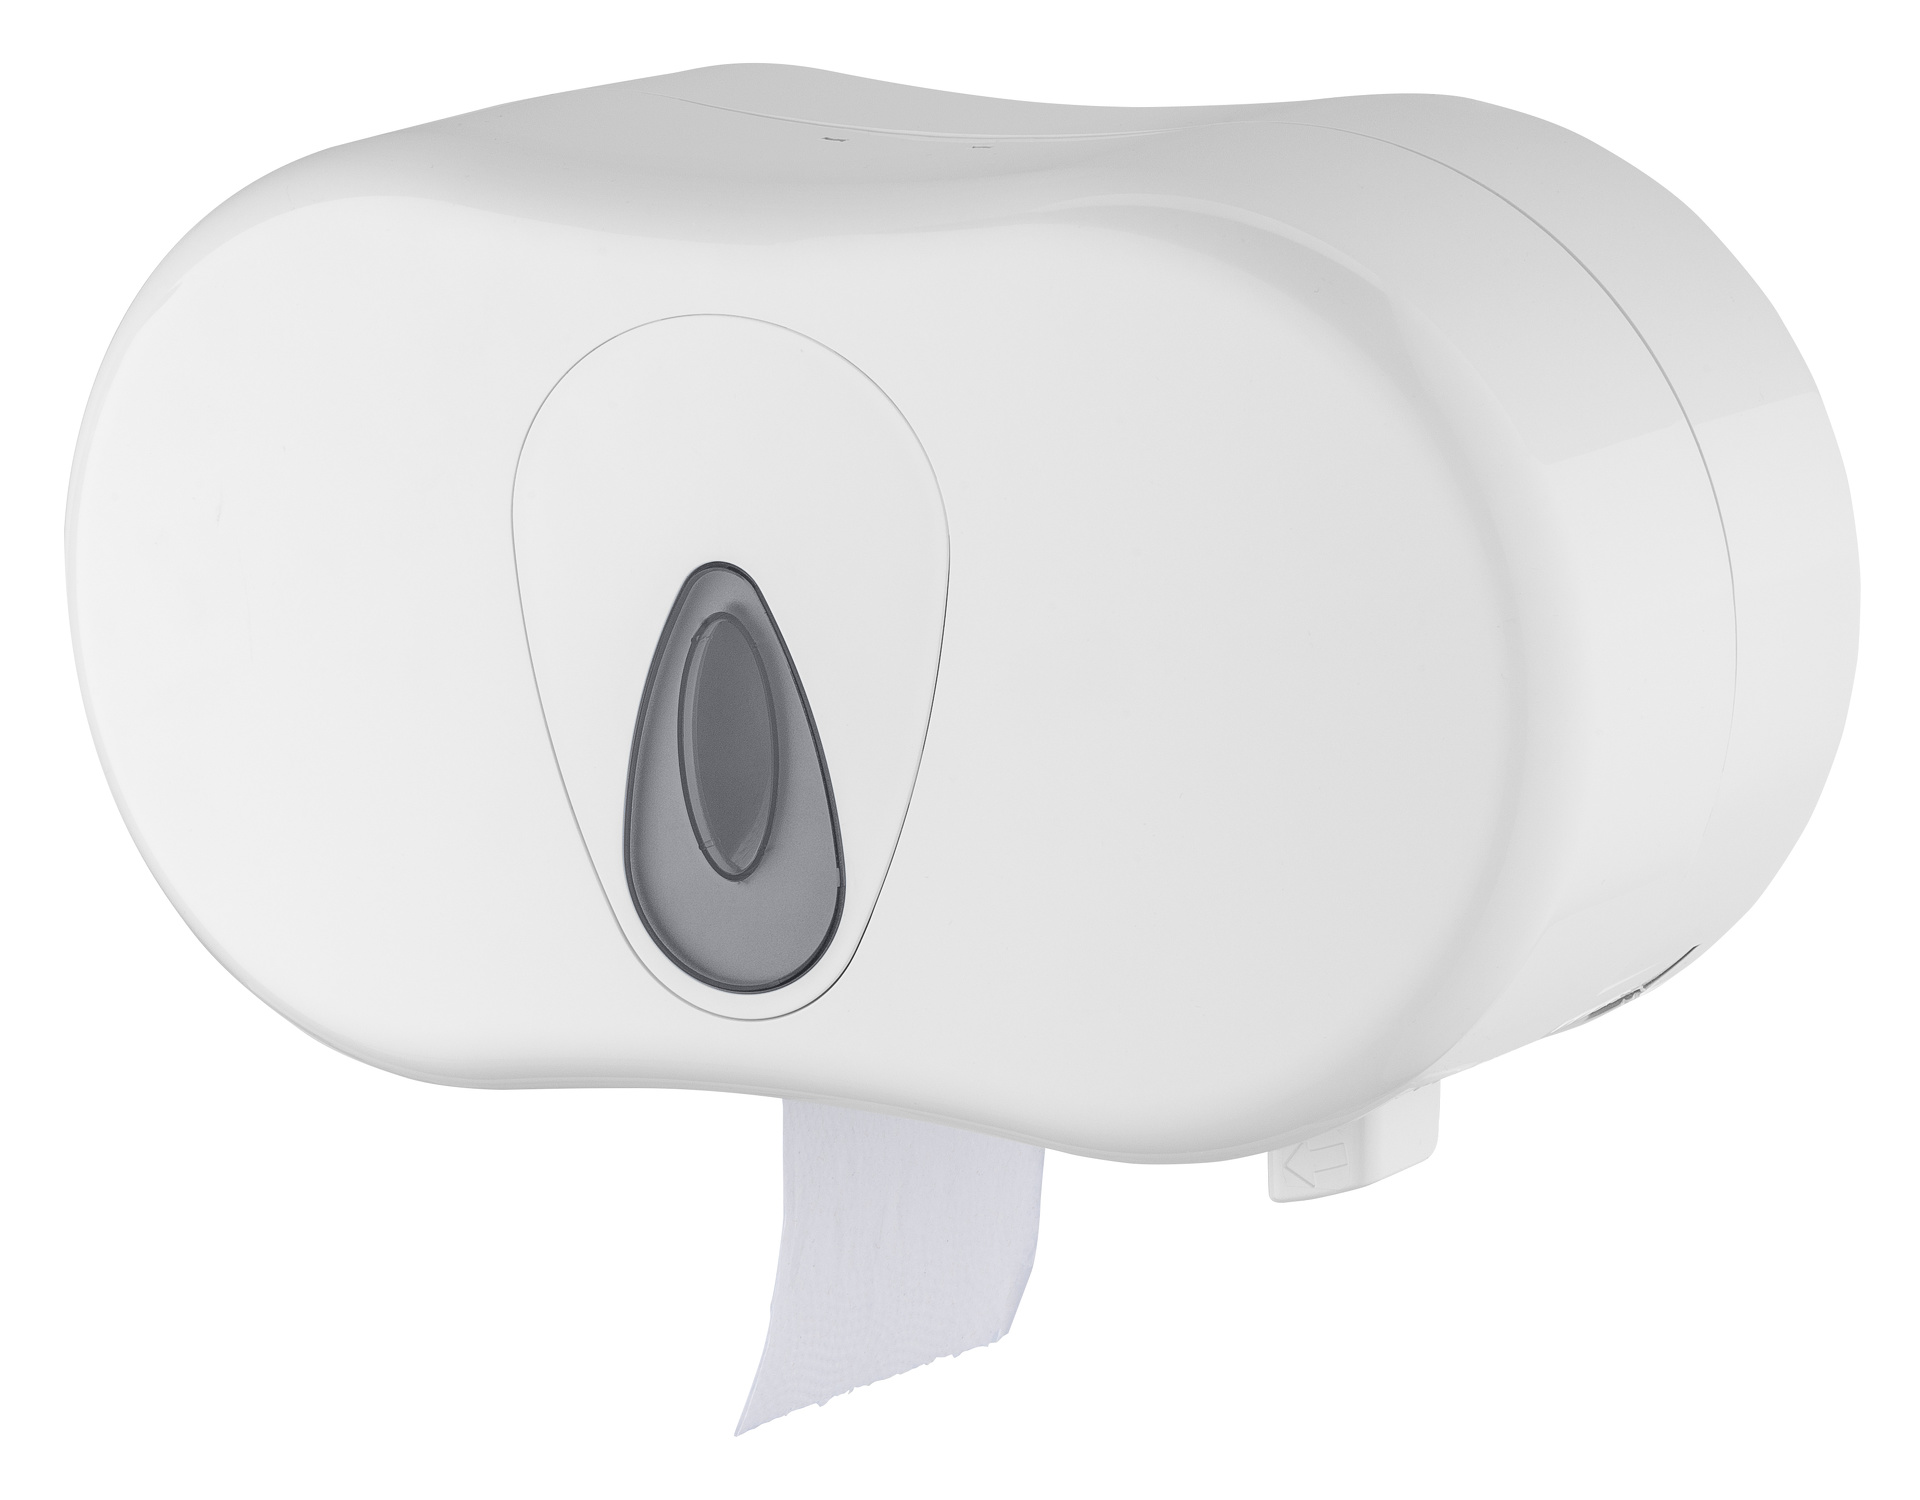 MSD Toilettenpapierhalter 2 Rollen, PQTMDuo